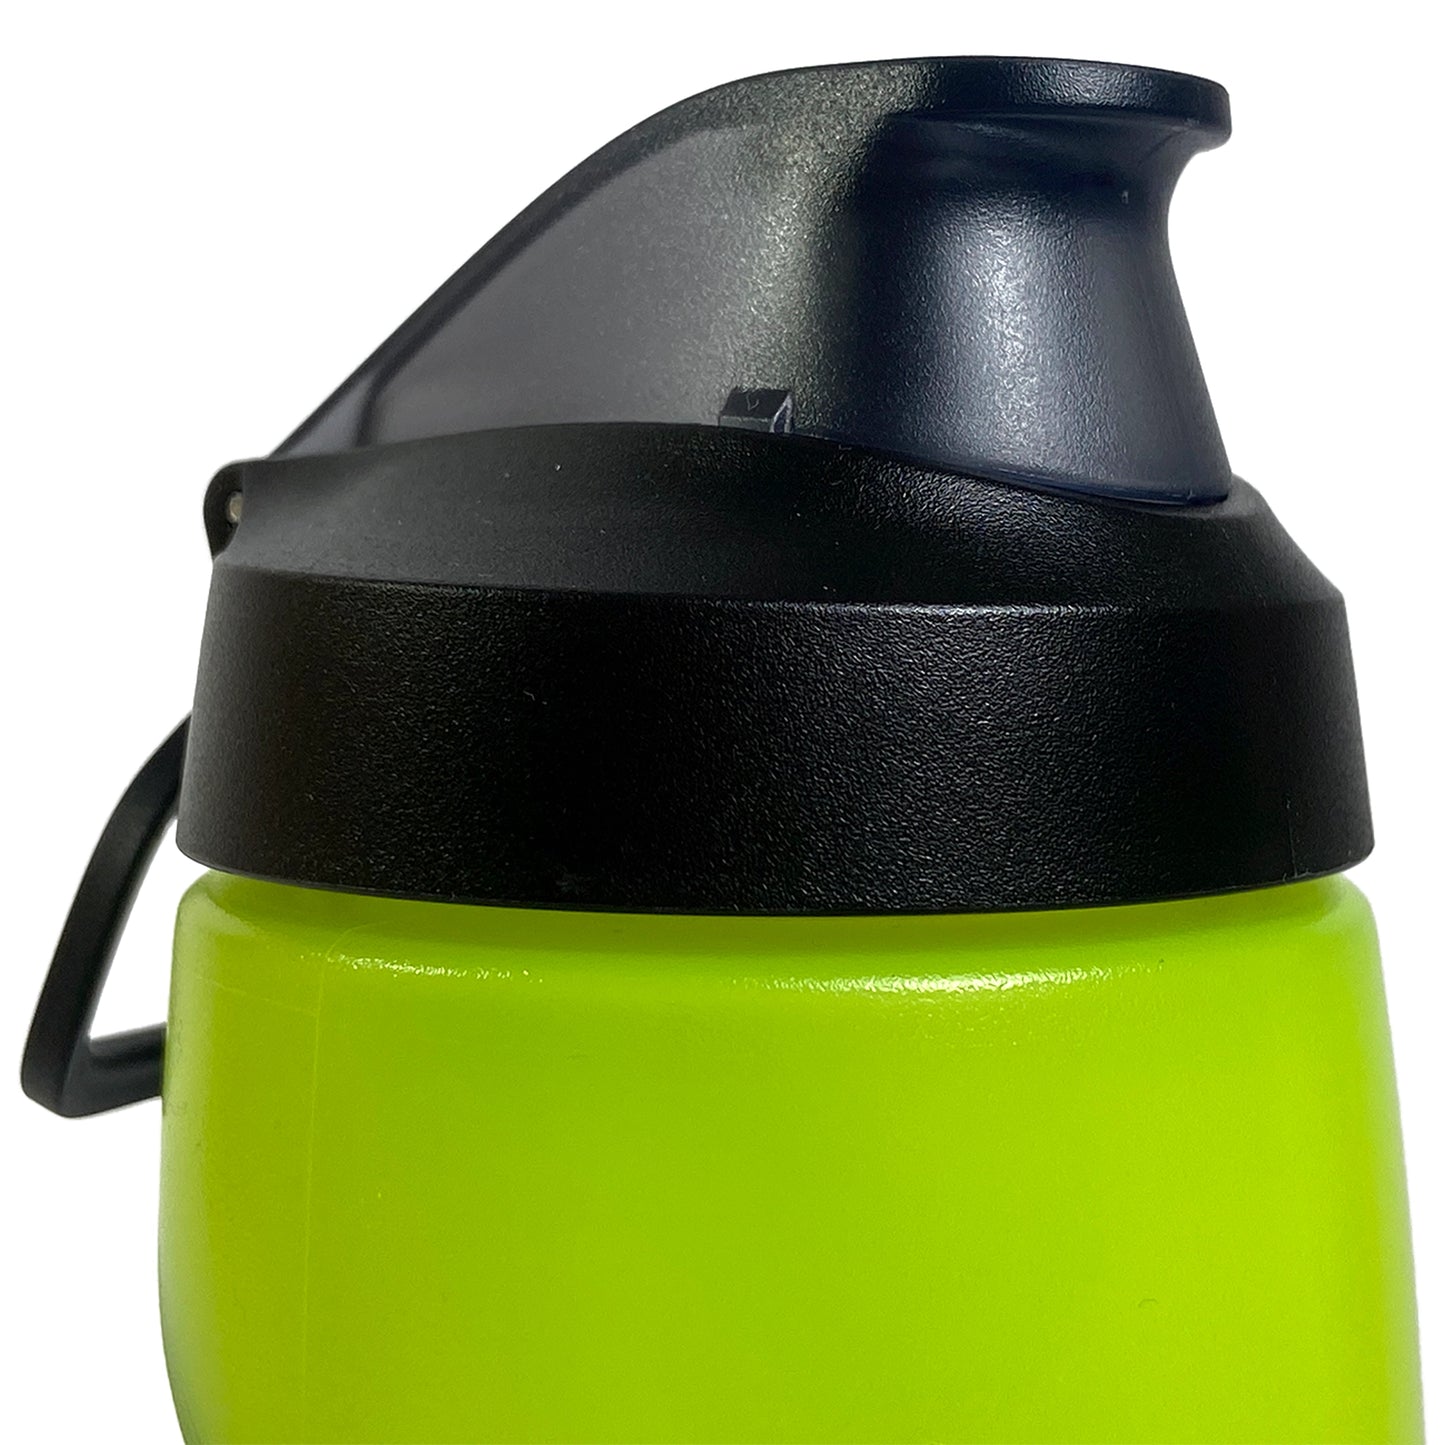 Nike Refuel 24 oz. Water Bottle